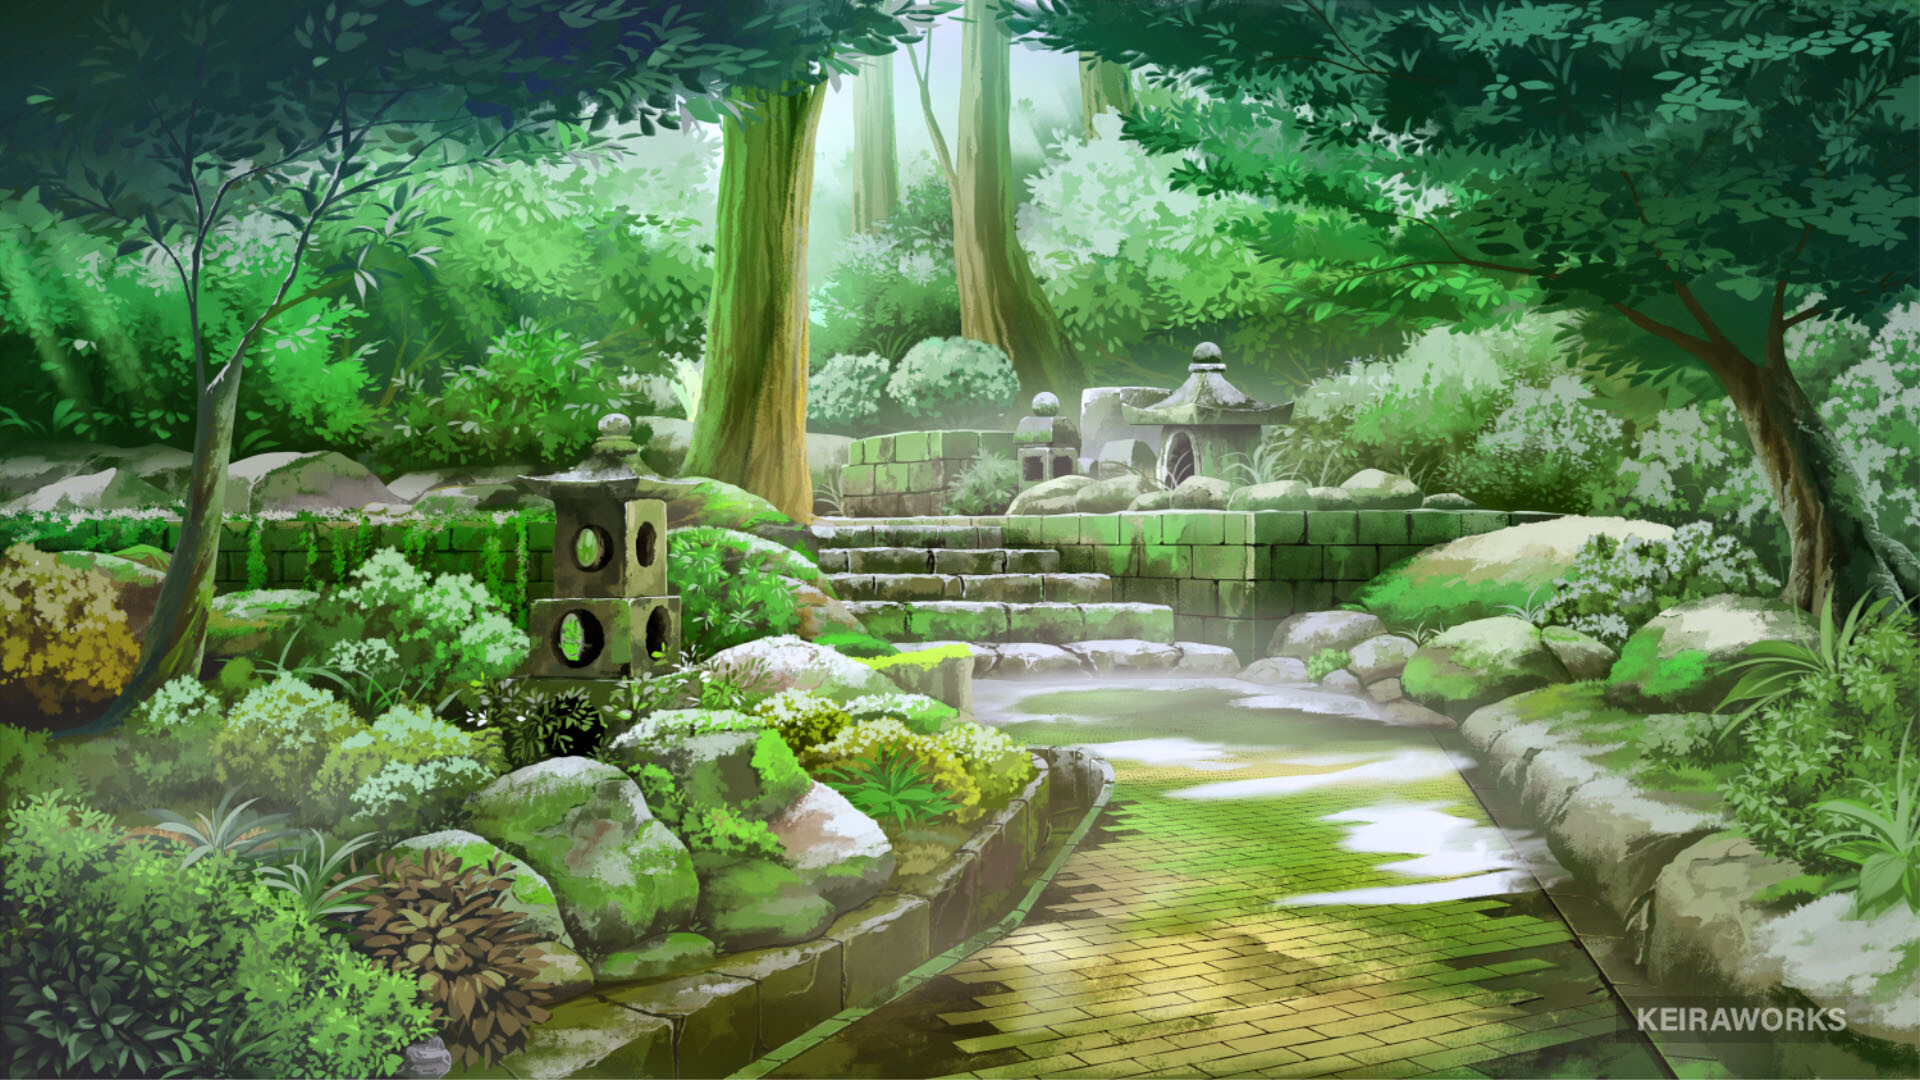 Vậy là bạn đã sẵn sàng cho một chuyến phiêu lưu đến đất nước Nhật Bản thông qua hình nền anime vườn phiêu lưu này chưa? Dòng chảy nhẹ nhàng của sông, những chòm hoa thơm ngát và nhân vật anime đáng yêu sẽ tạo ra một bức tranh phong cảnh rực rỡ và thú vị.